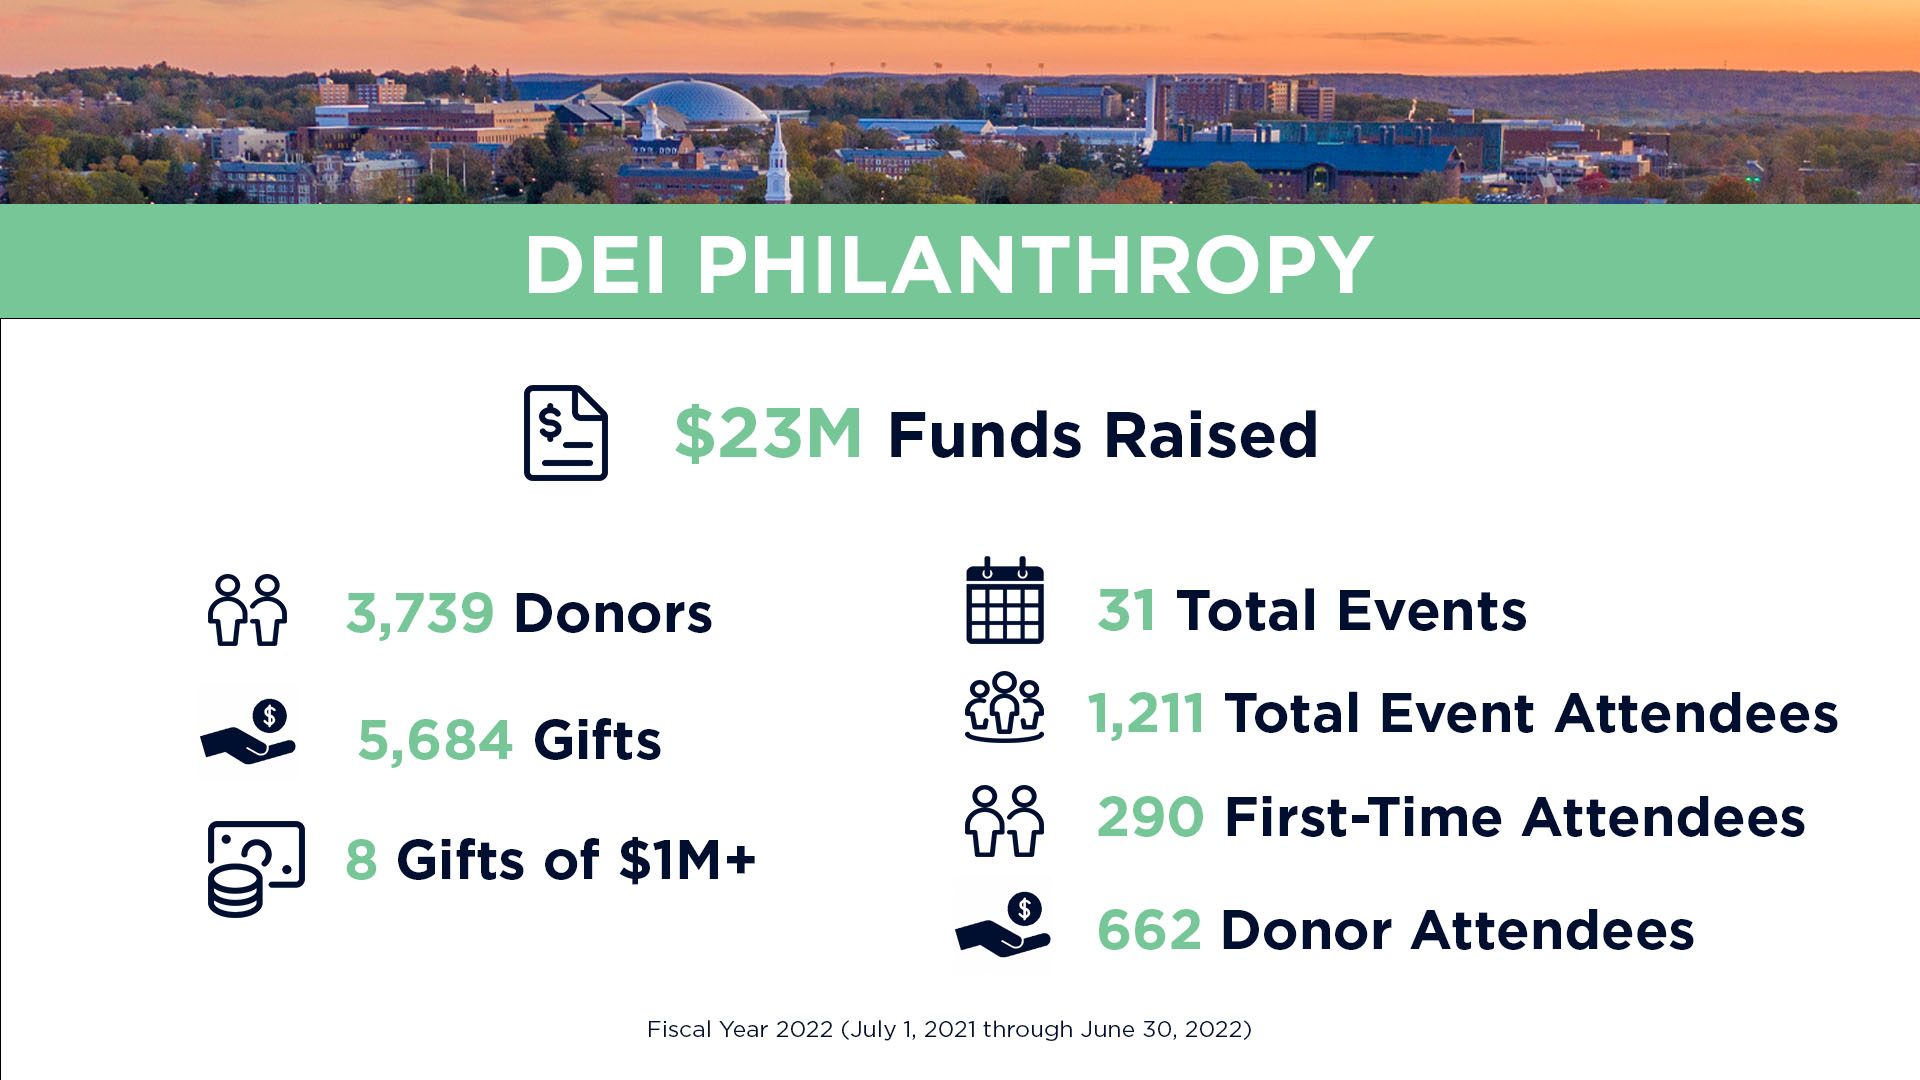 DEI philanthropy